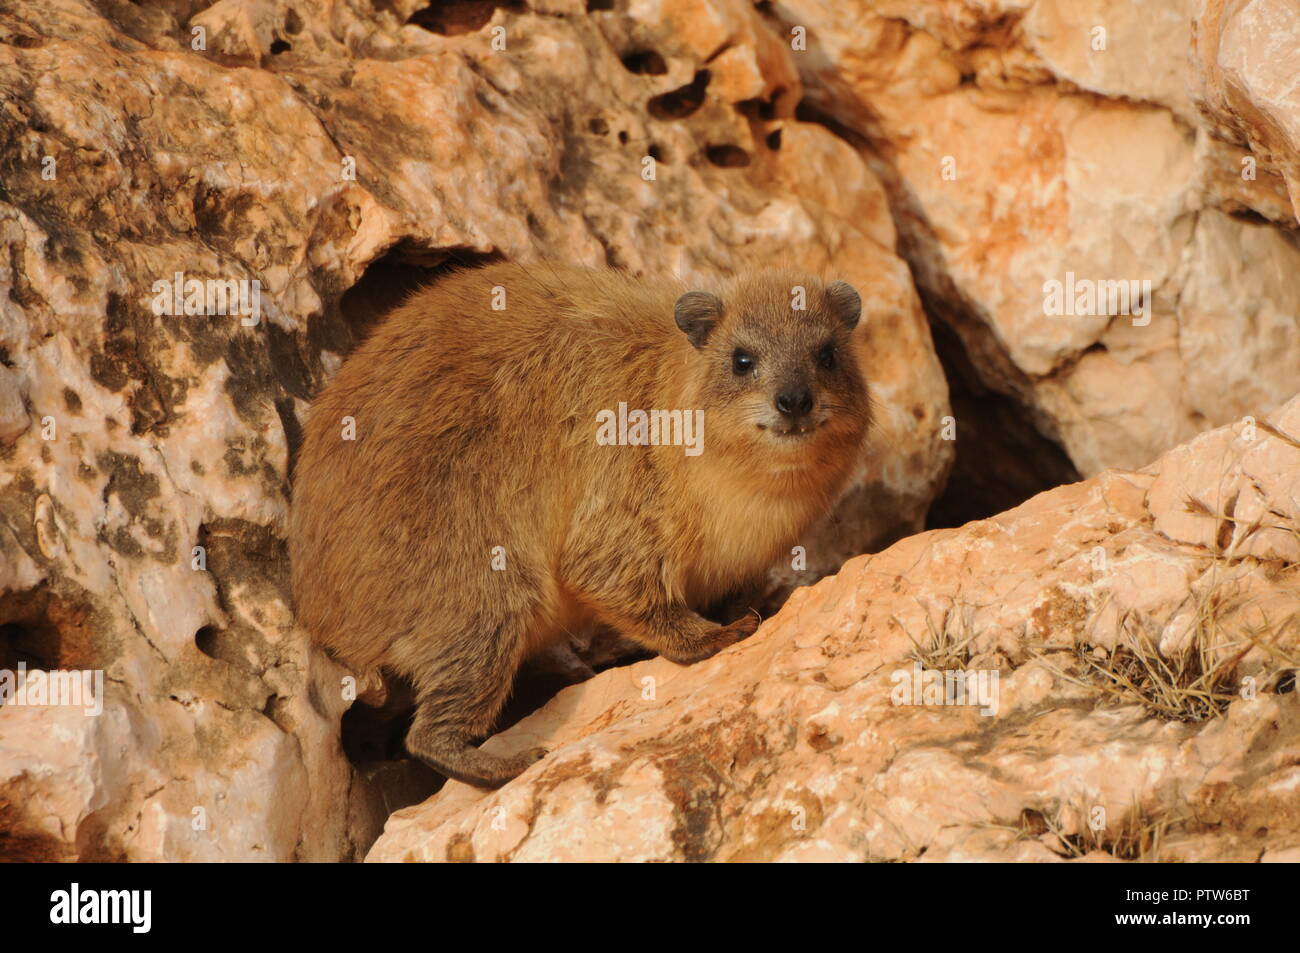 Rock hyrax in rocky terrain Stock Photo